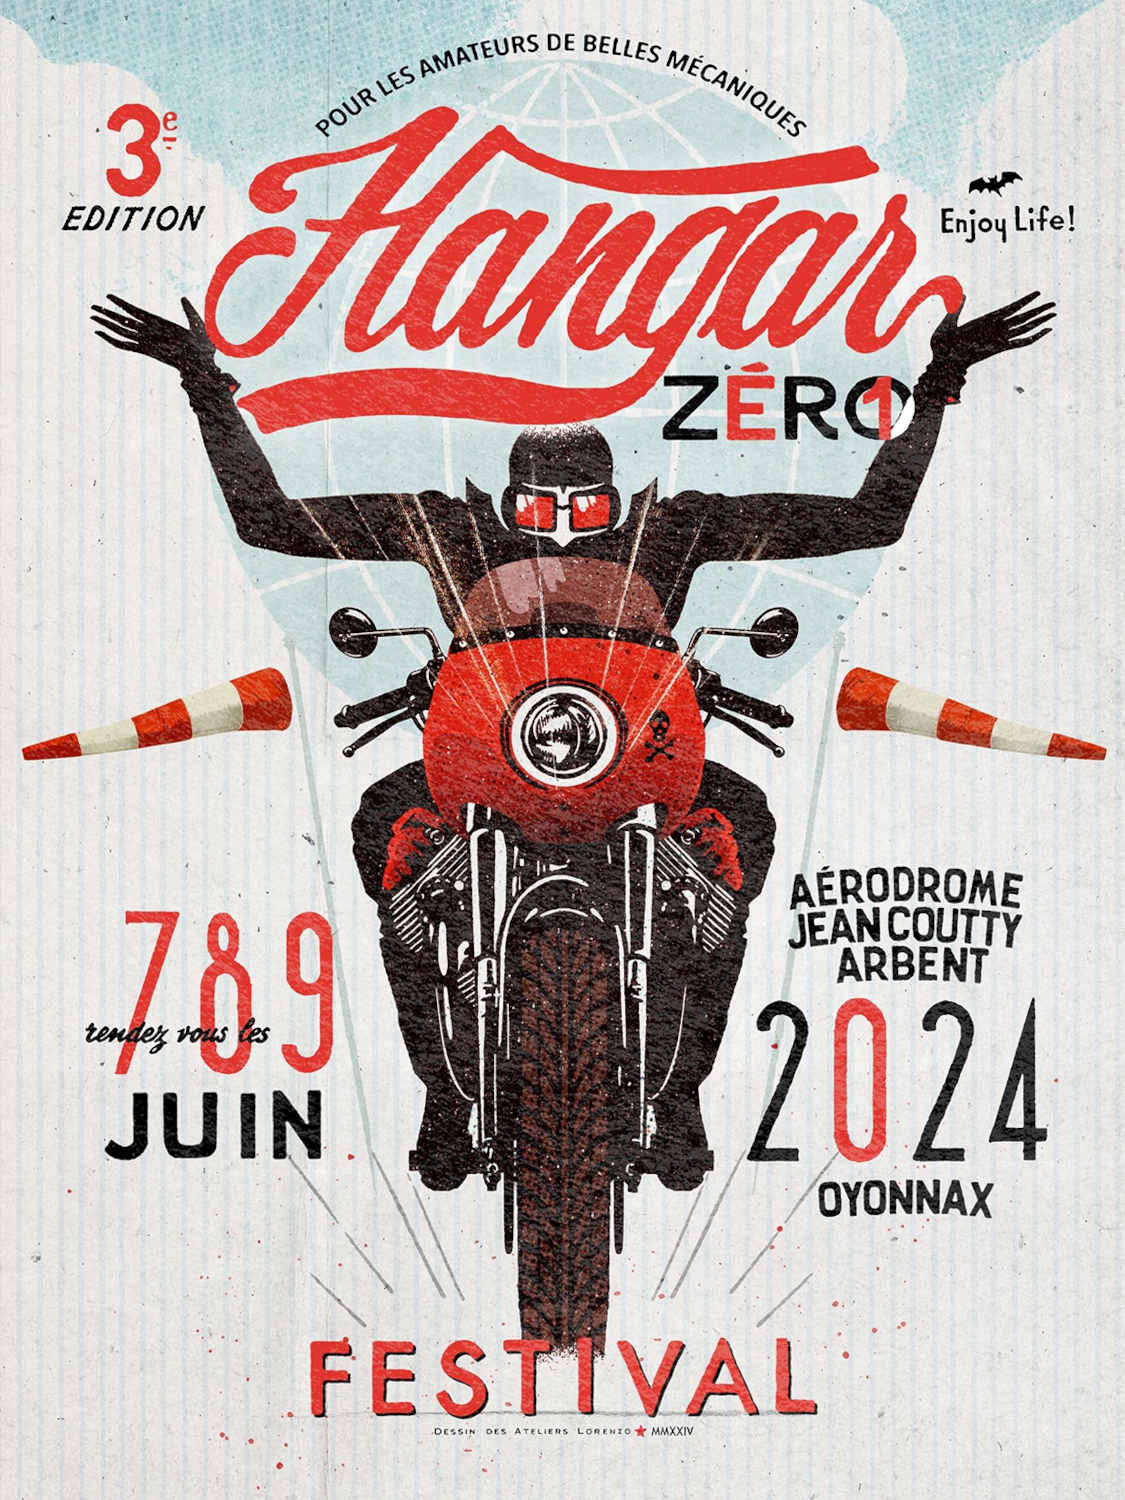 Hangar Zero Motor Festival France